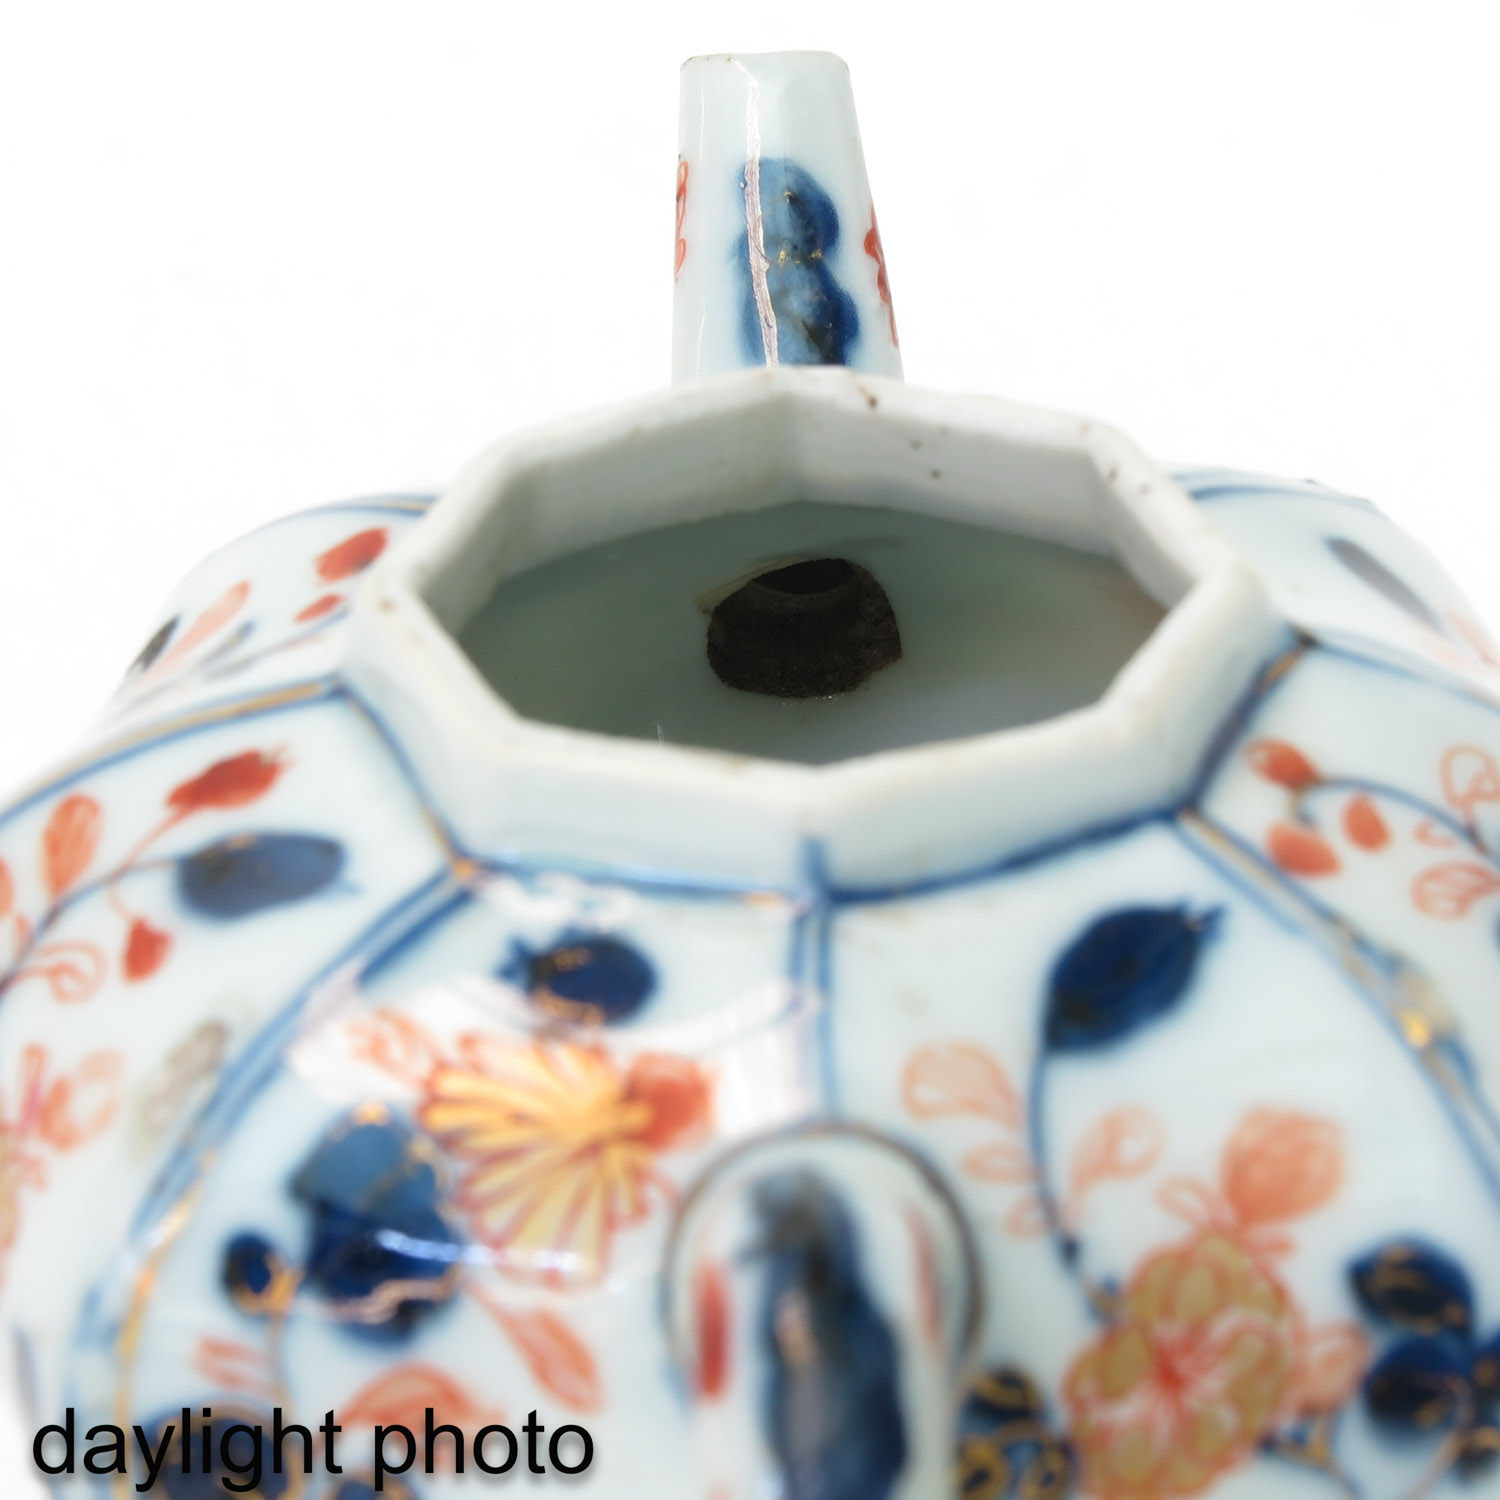 An Imari Teapot - Image 10 of 10